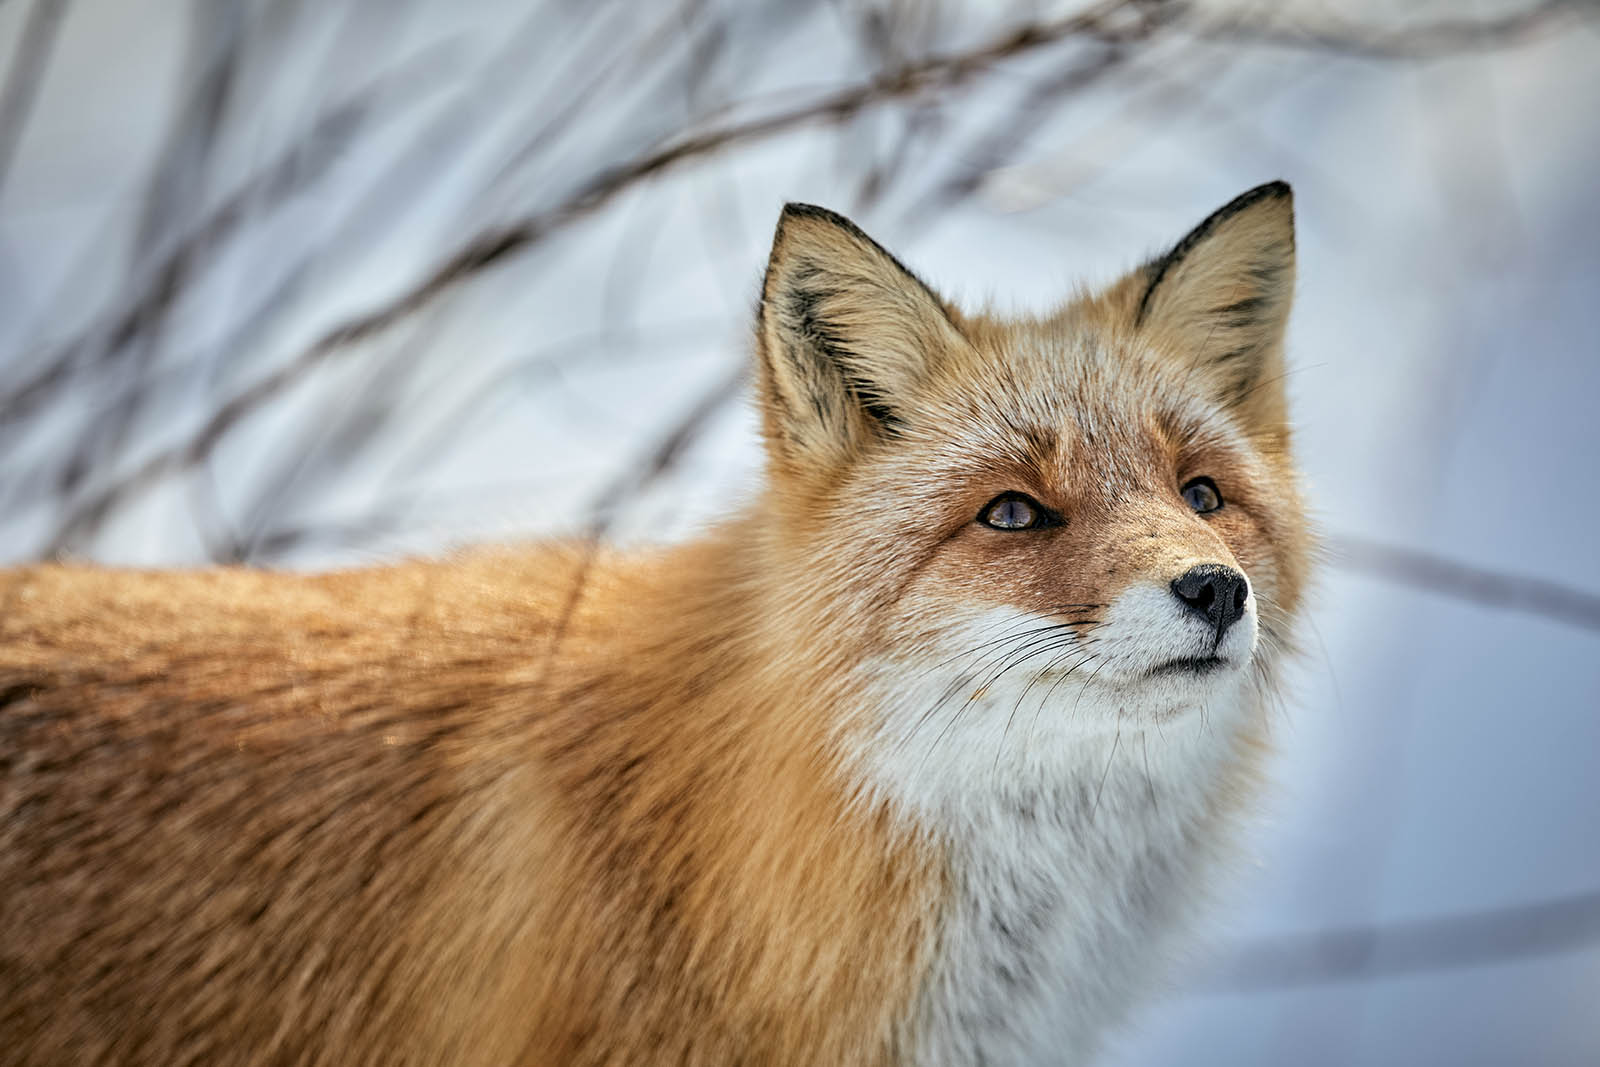 Image of fox looking upward